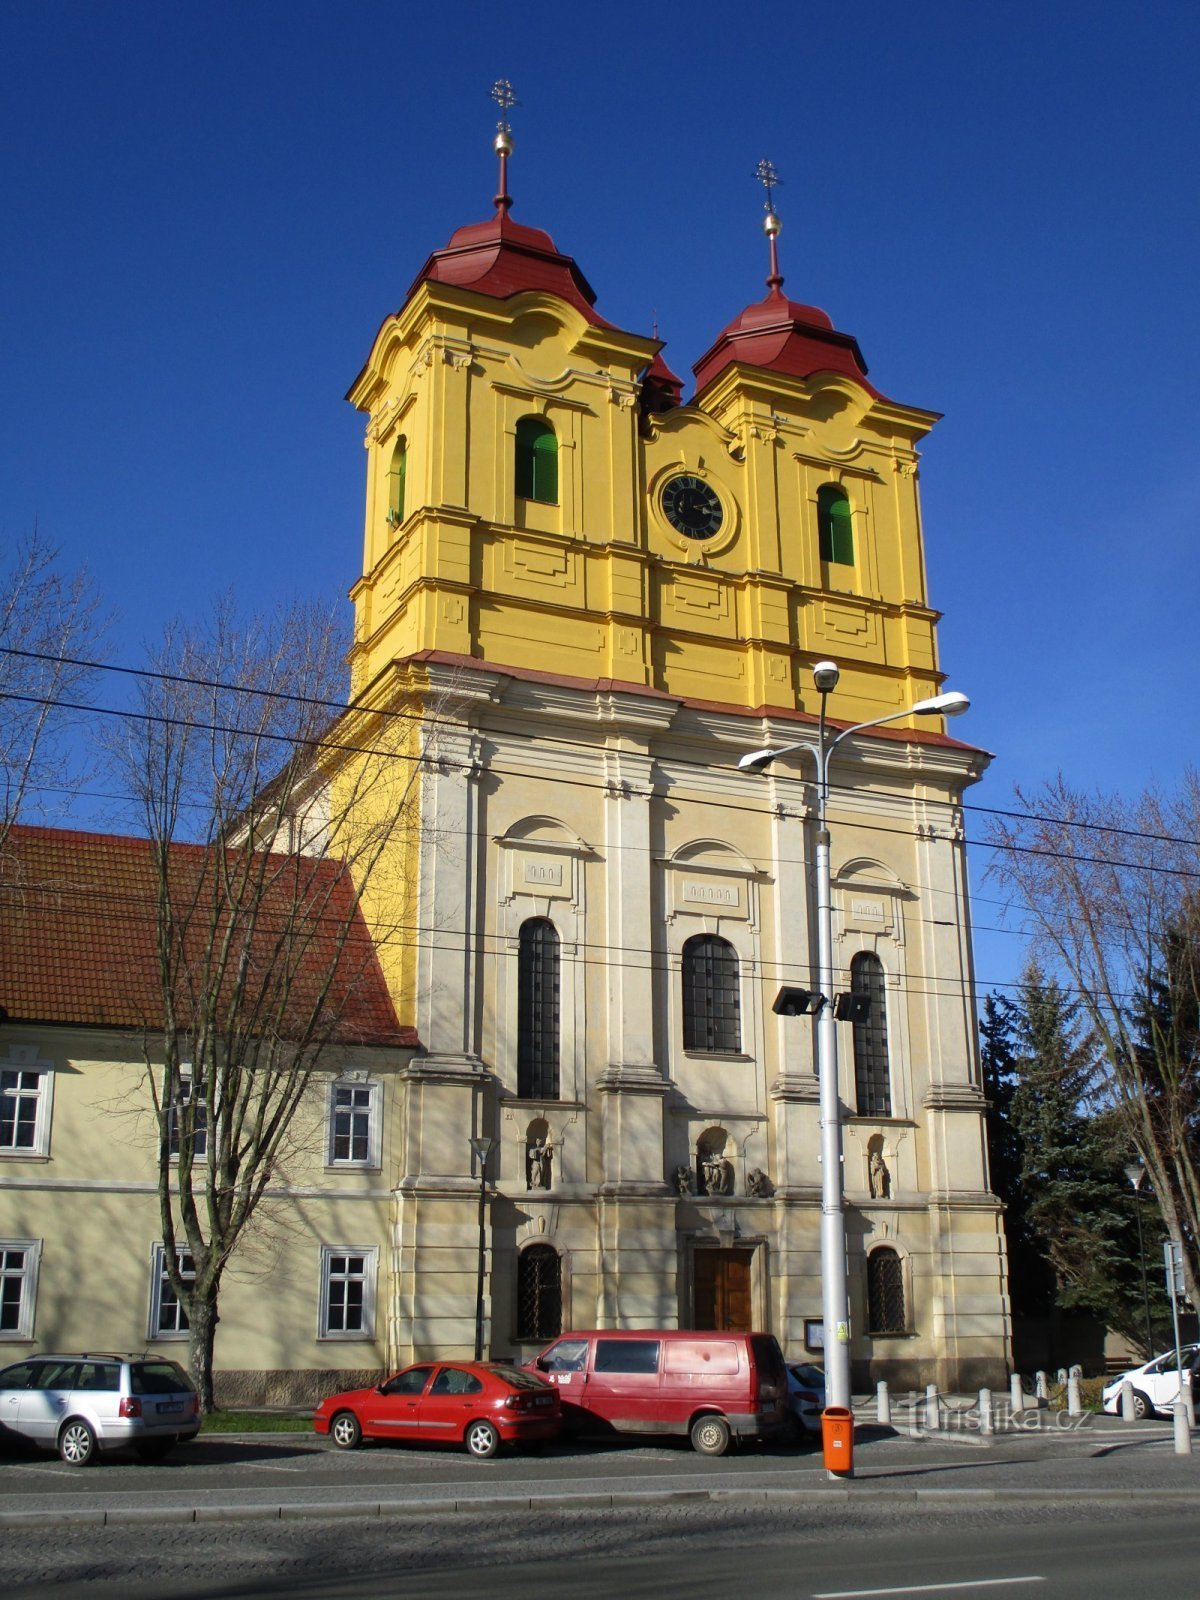 Kerk van St. Anne in Kukleny (Hradec Králové, 15.3.2020/XNUMX/XNUMX)